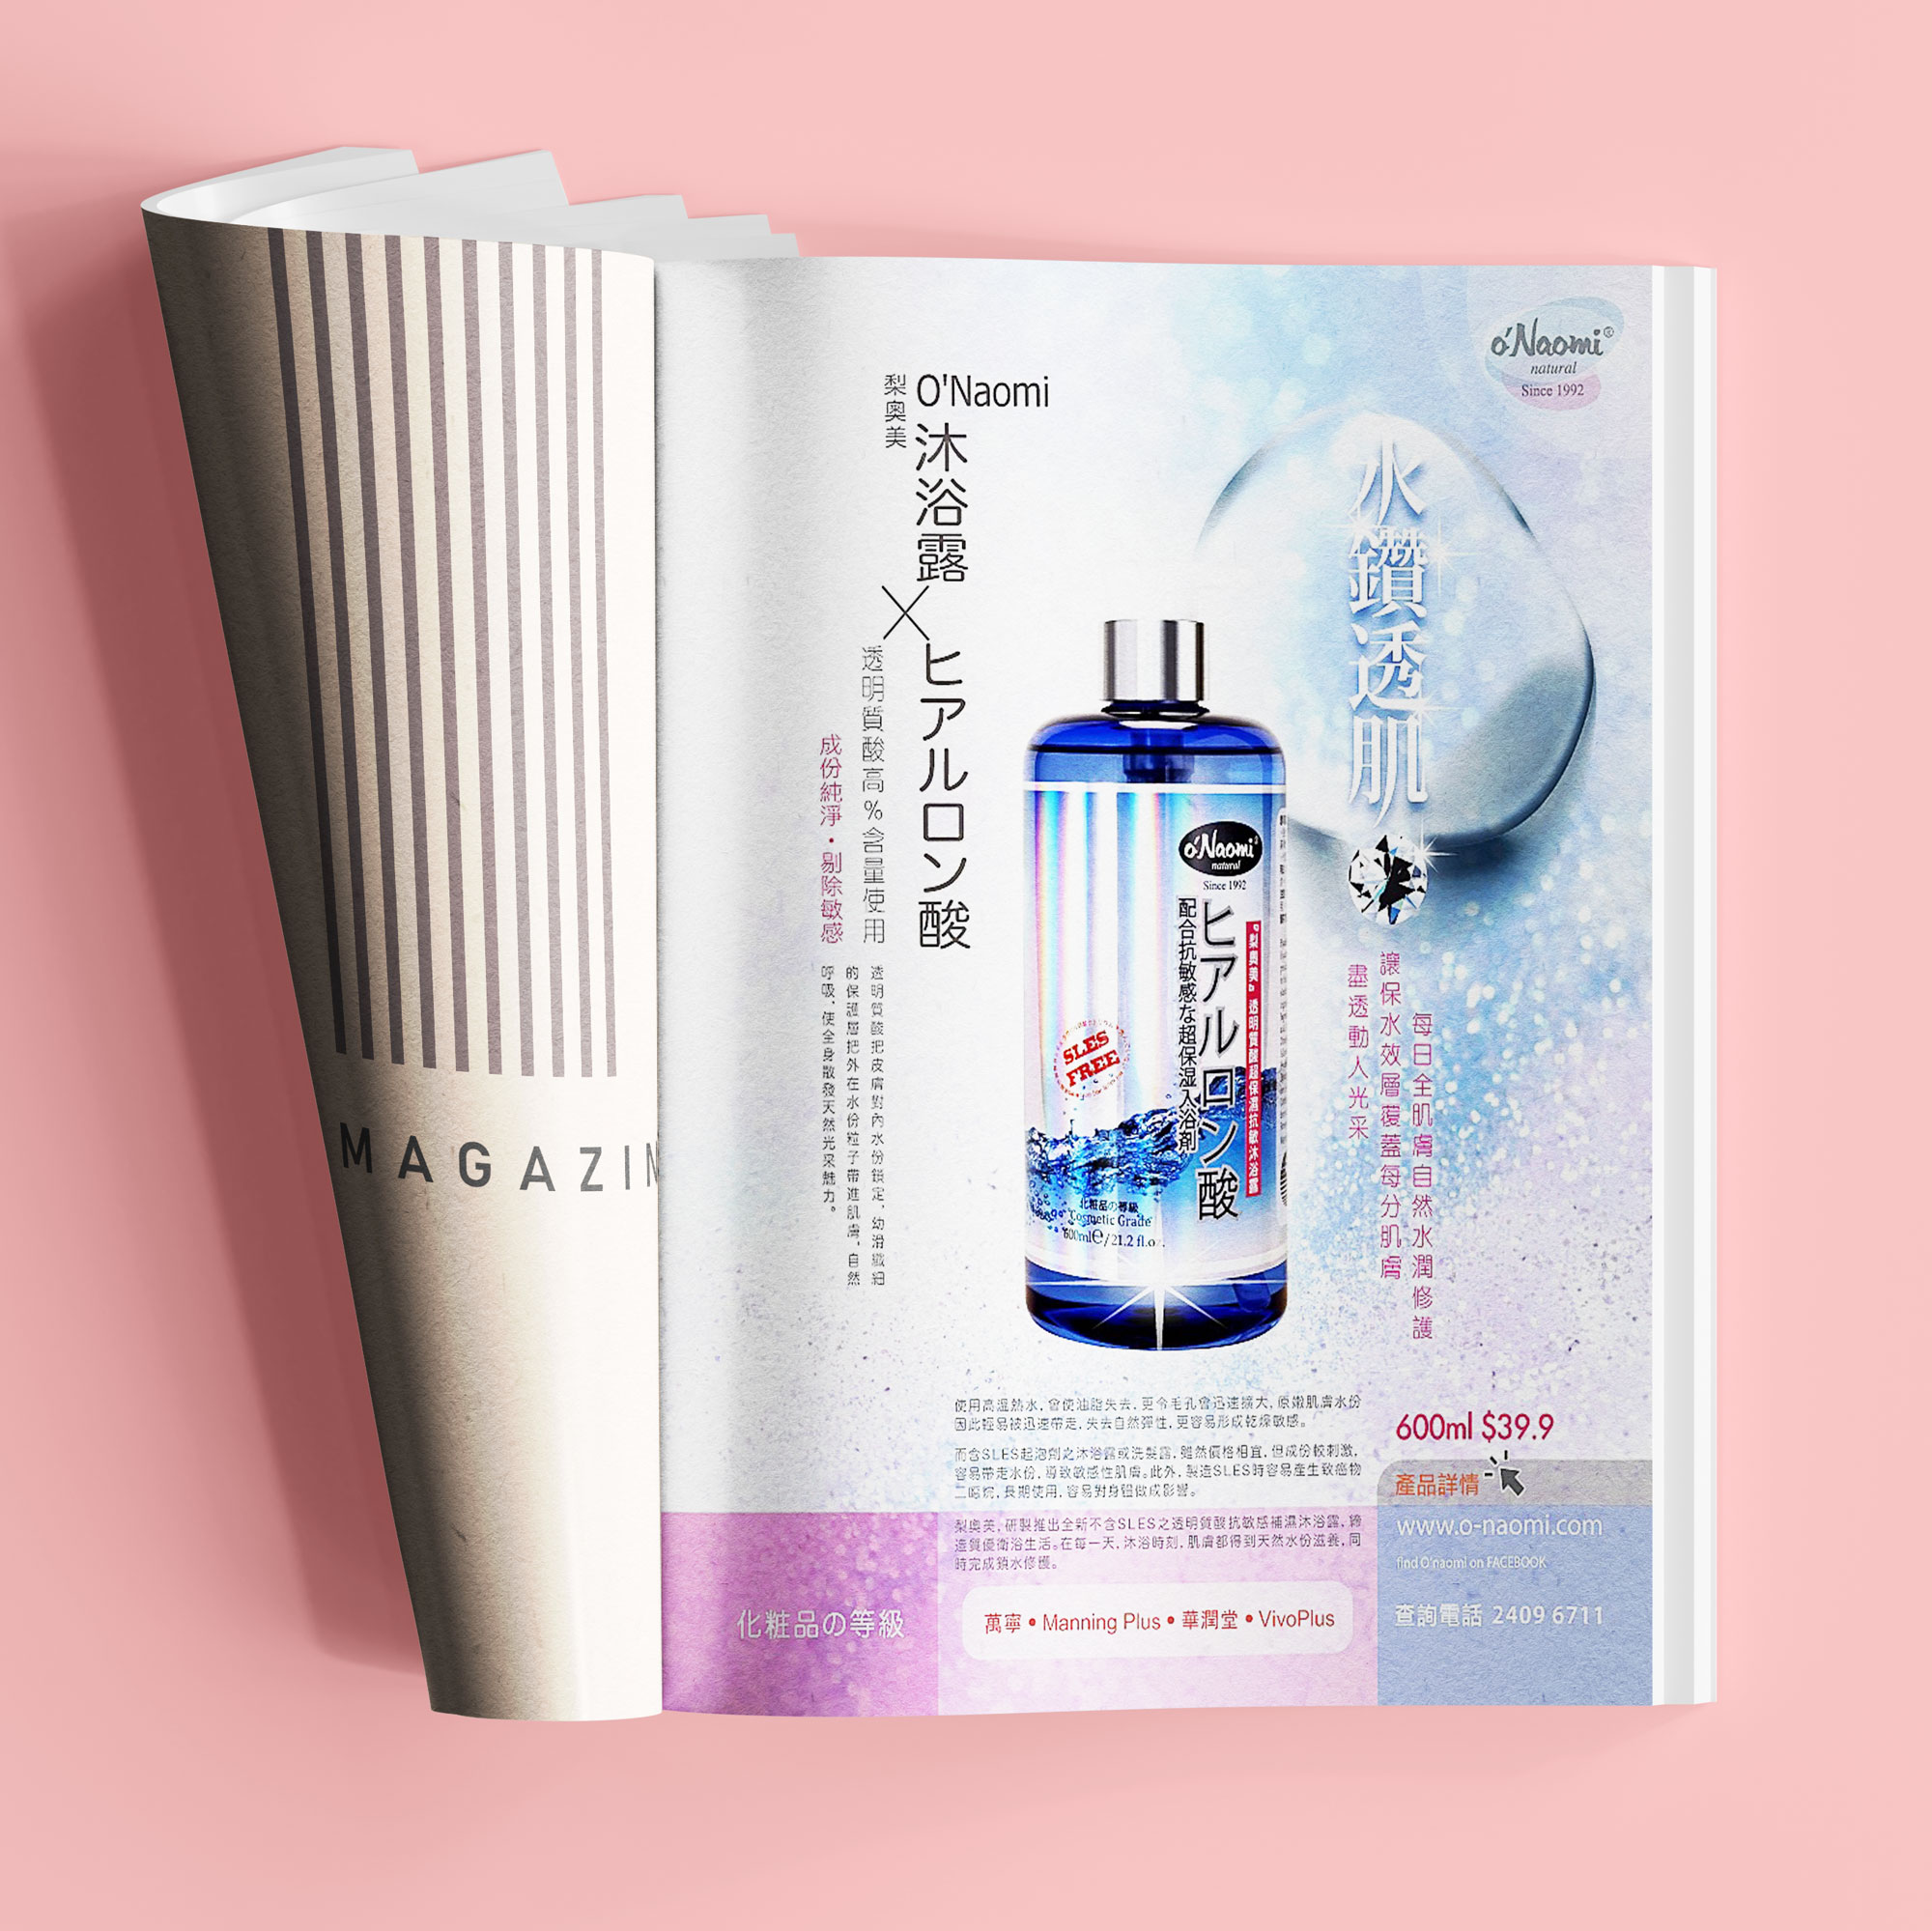 Onaomi Hyaluronic Acid Bath Gel Magazine Ad 02